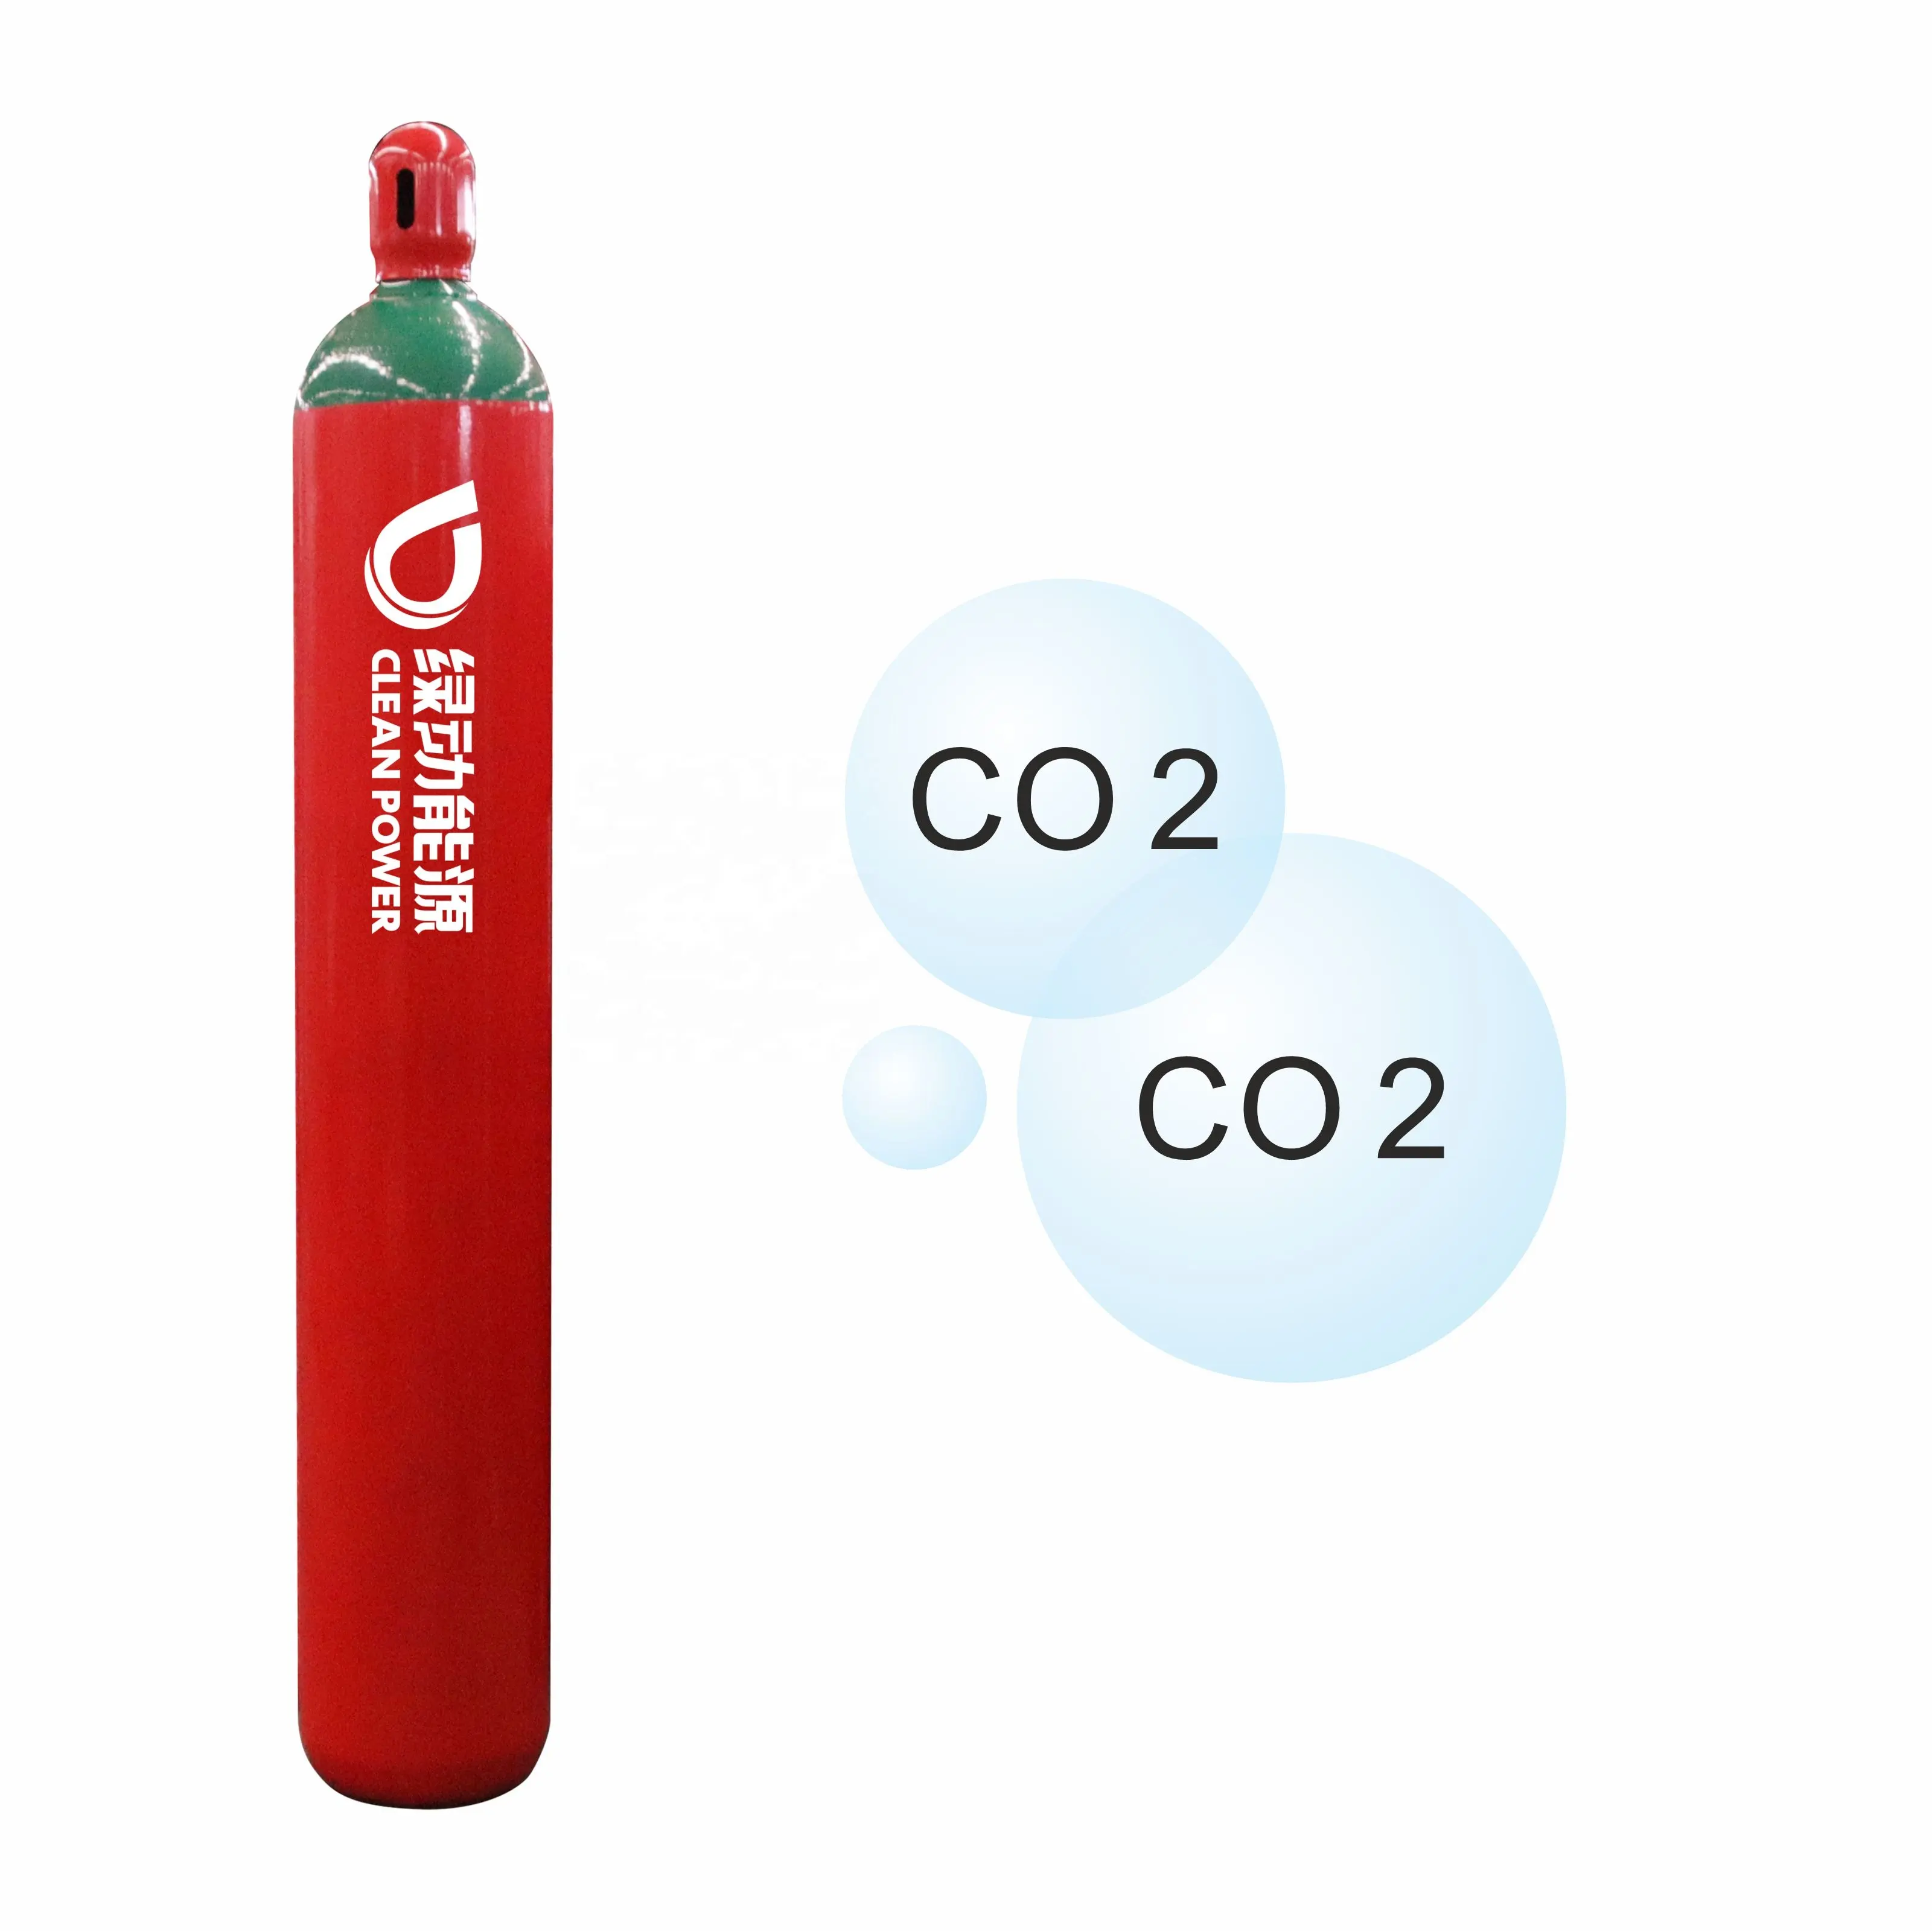 Populer CO2 Tekanan Tinggi Tabung Api Katup PZ27.8 Pemadam Kebakaran CO2 Silinder dengan ISO9809 dan TPED Disetujui